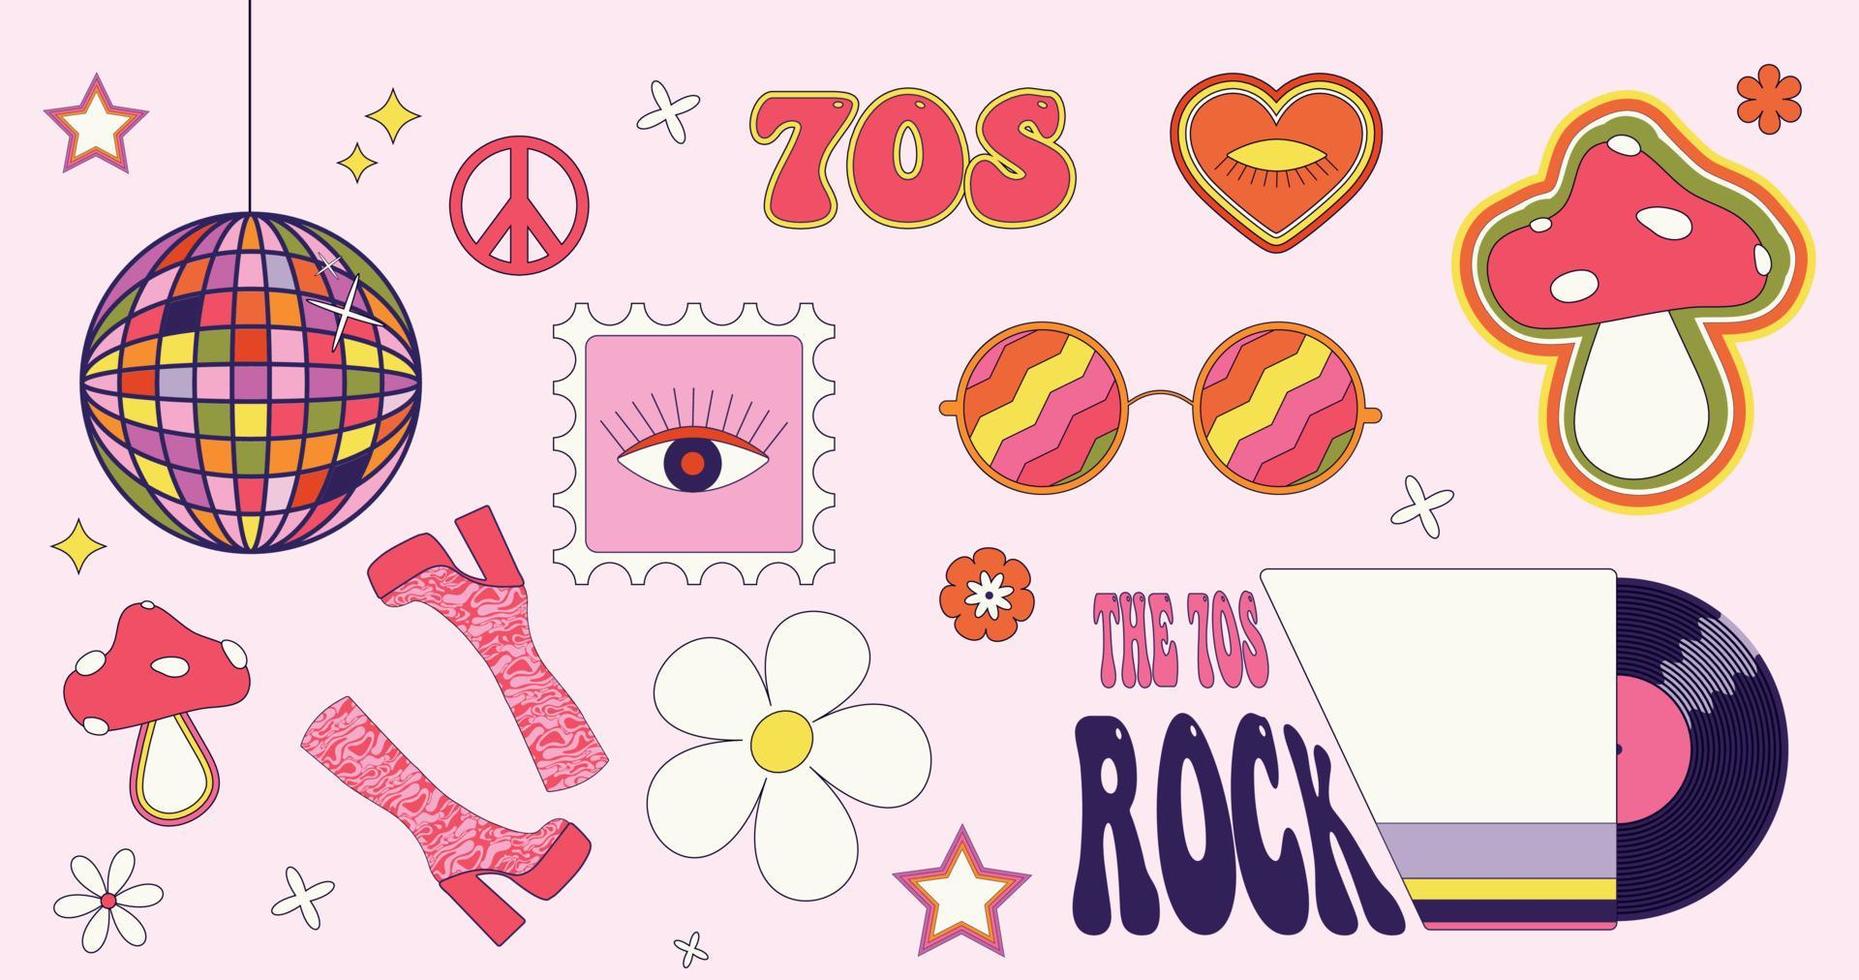 maravilloso juego de pegatinas vectoriales de los años 70. bola de discoteca, botas altas, signo de la paz, hongos, hippies, disco de vinilo y gafas redondas. vector